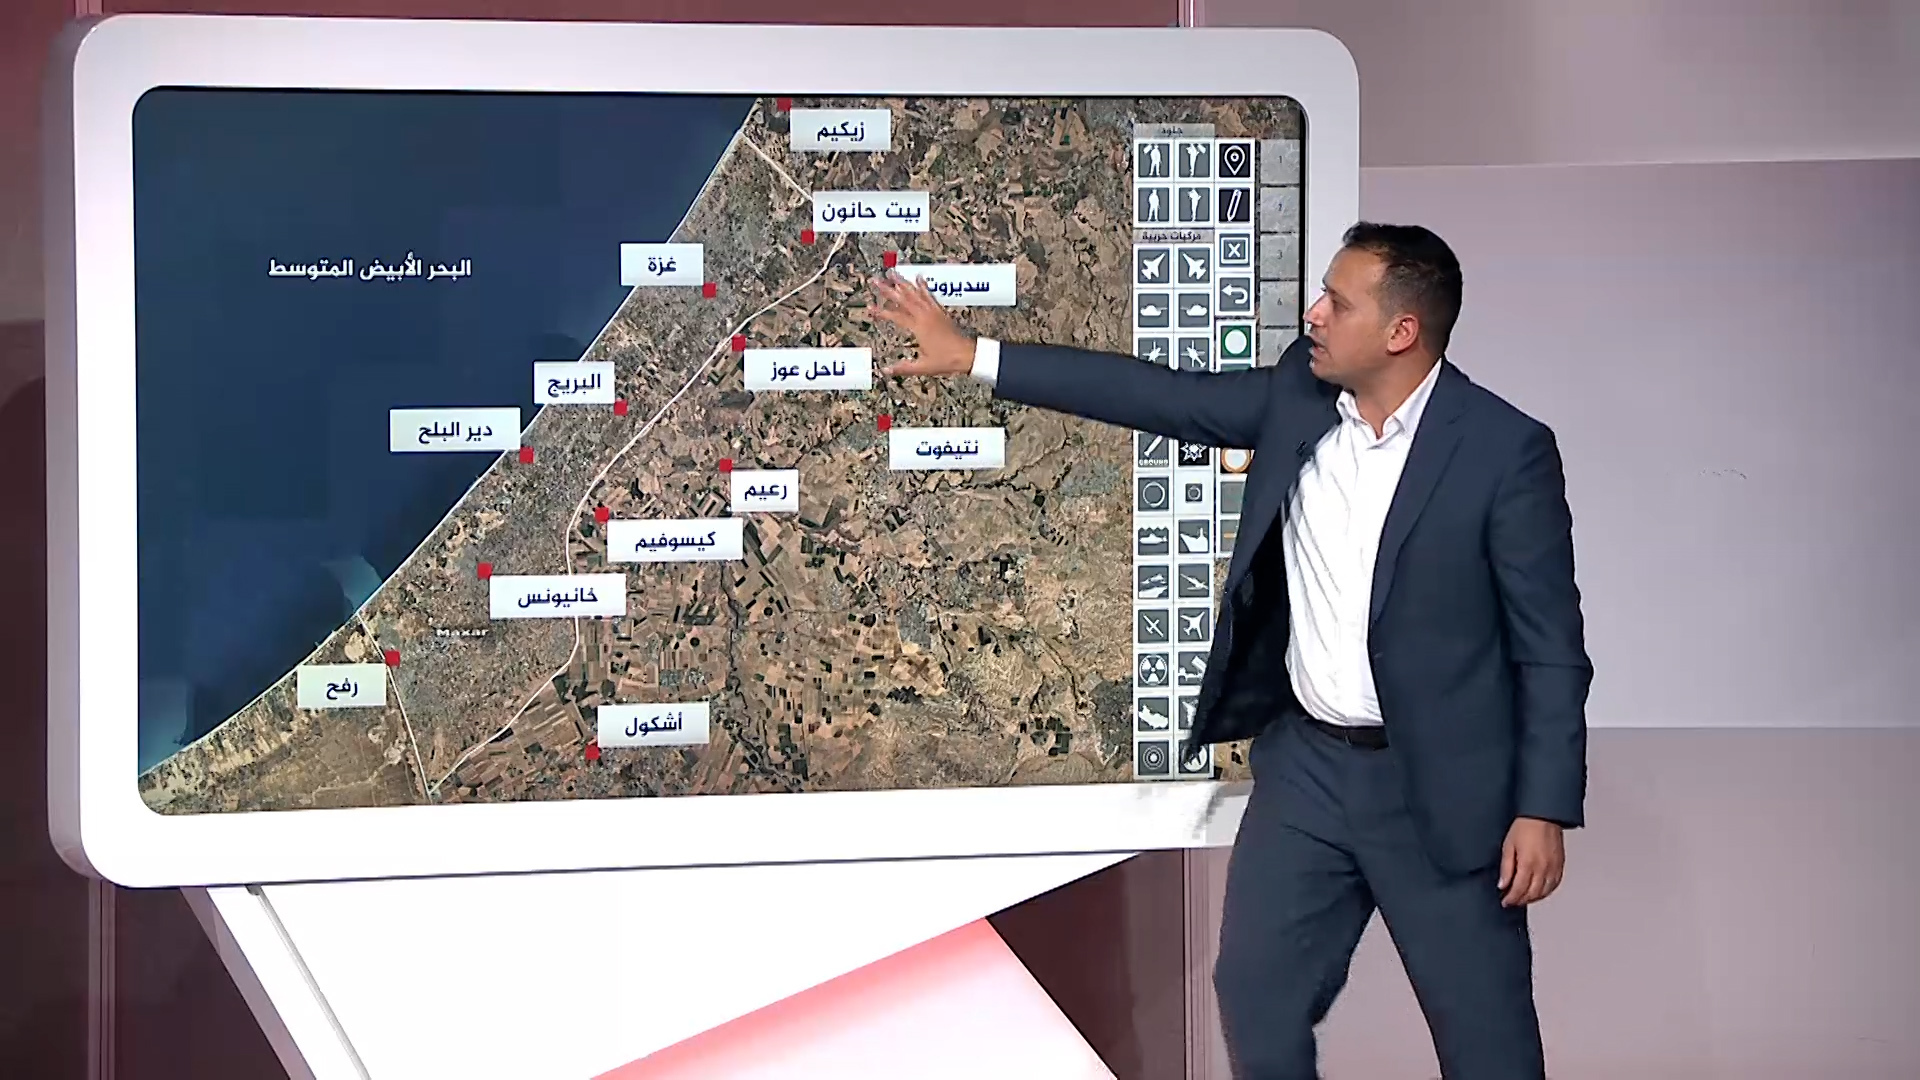 قصف غير مسبوق.. خريطة تفاعلية للوضع الميداني بقطاع غزة | البرامج – البوكس نيوز